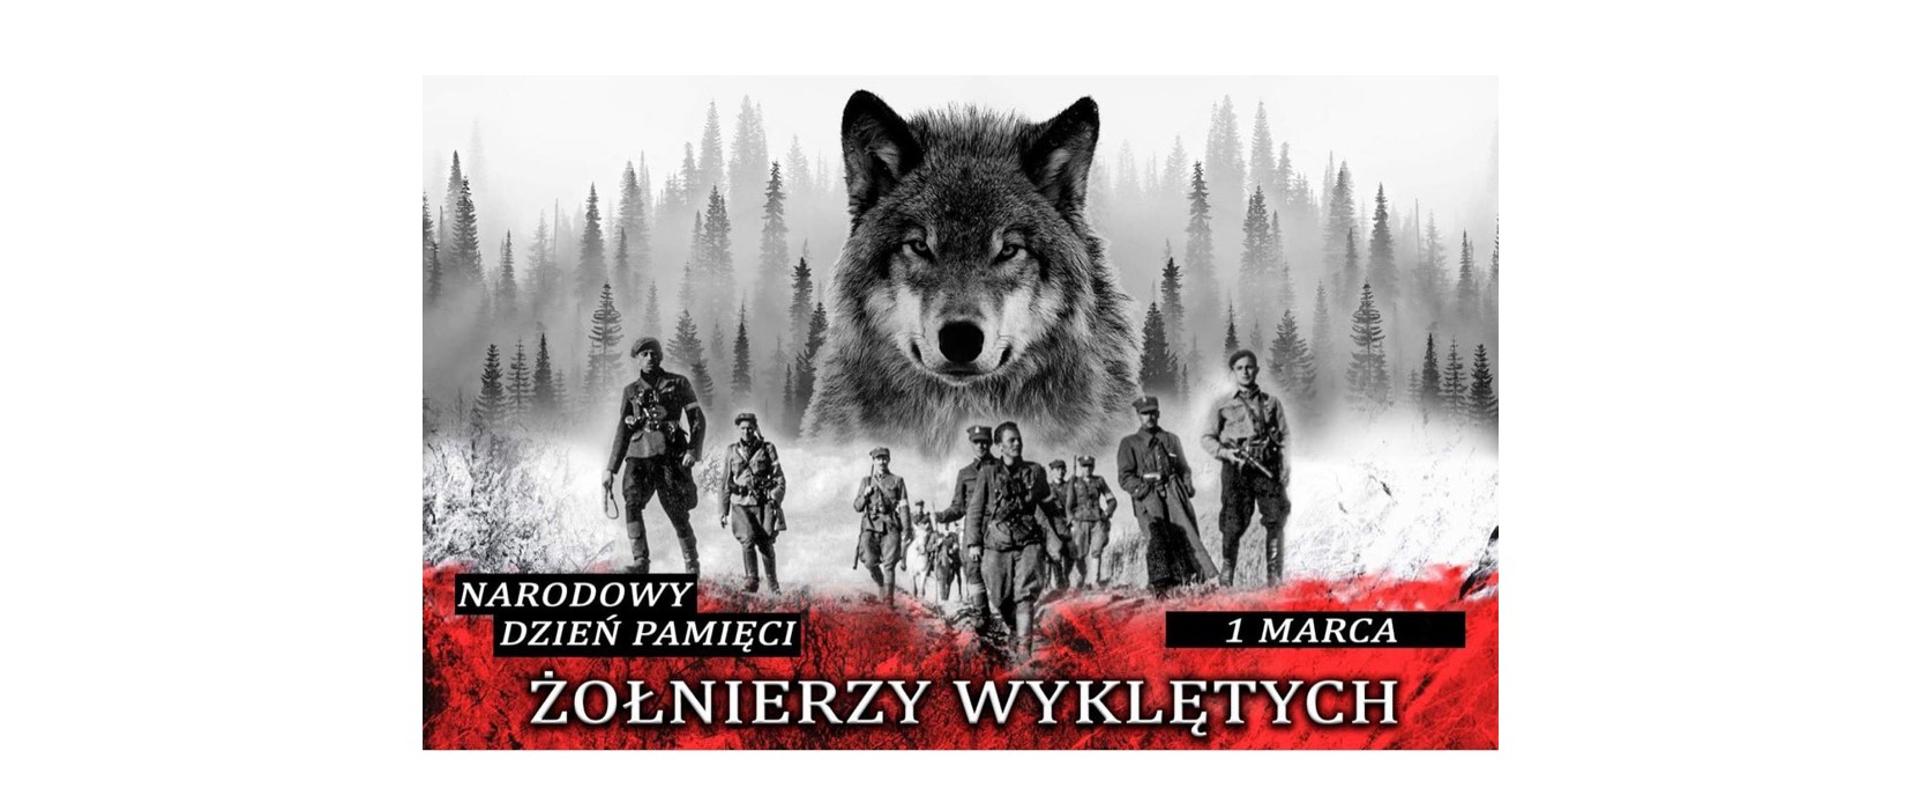 Plakat z okazji narodowego dnia żołnierzy wyklętych: Na środku, na tle lasu we mgle, łeb wilka znajdujący się ponad postaciami mężczyzn w mundurach z okresu II wojny światowej. Na dole plakatu napis: ”Narodowy Dzień Pamięci Żołnierzy Wyklętych, 1 marca”.